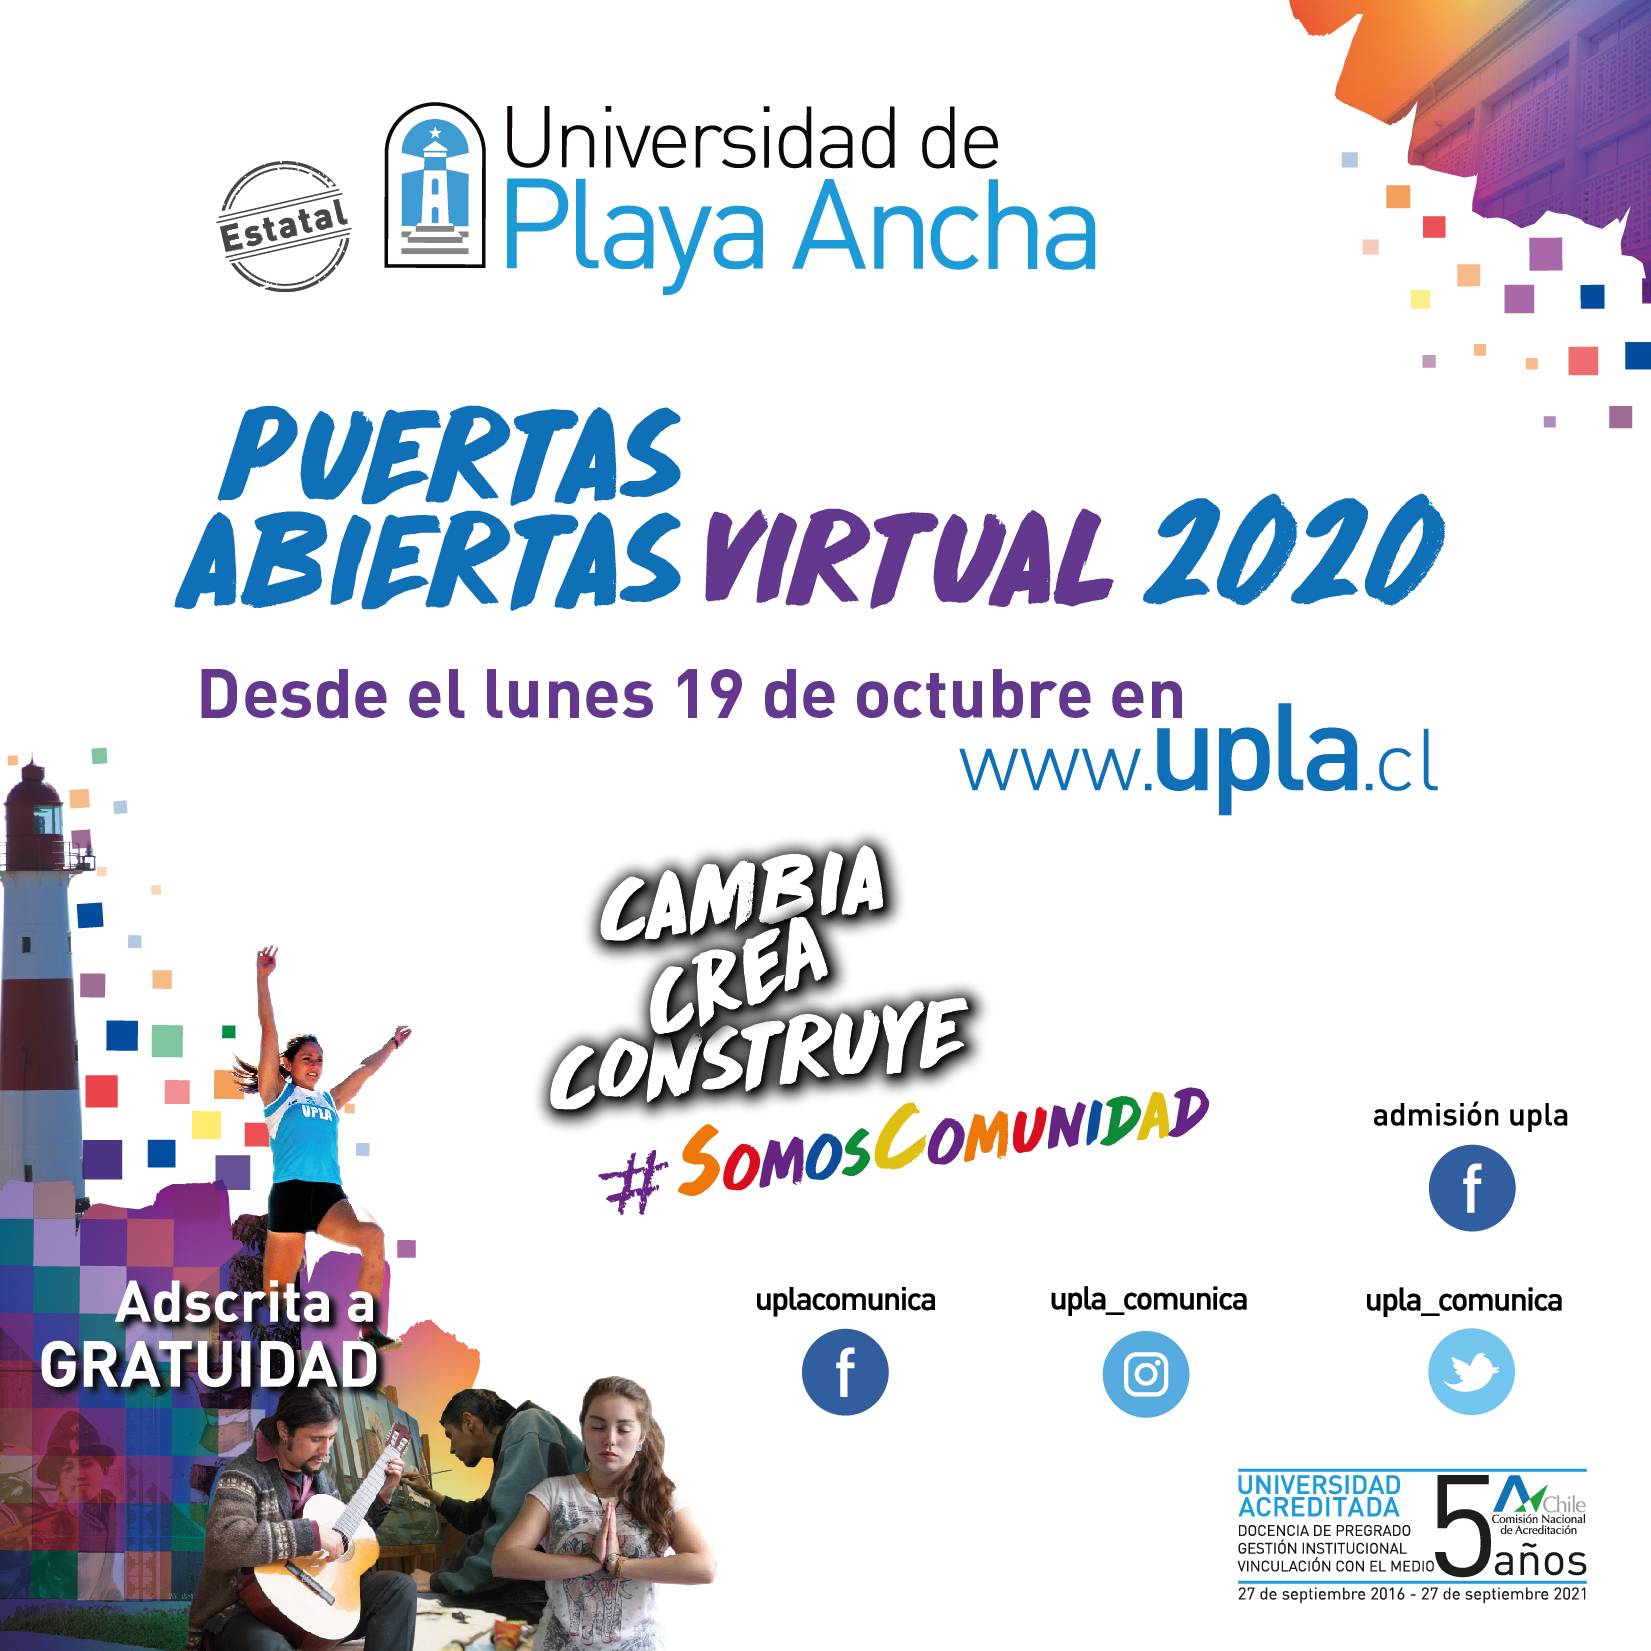 EDUCACIÓN: Este lunes 19 comienza “Puertas Abiertas Virtual” de la Universidad de Playa Ancha